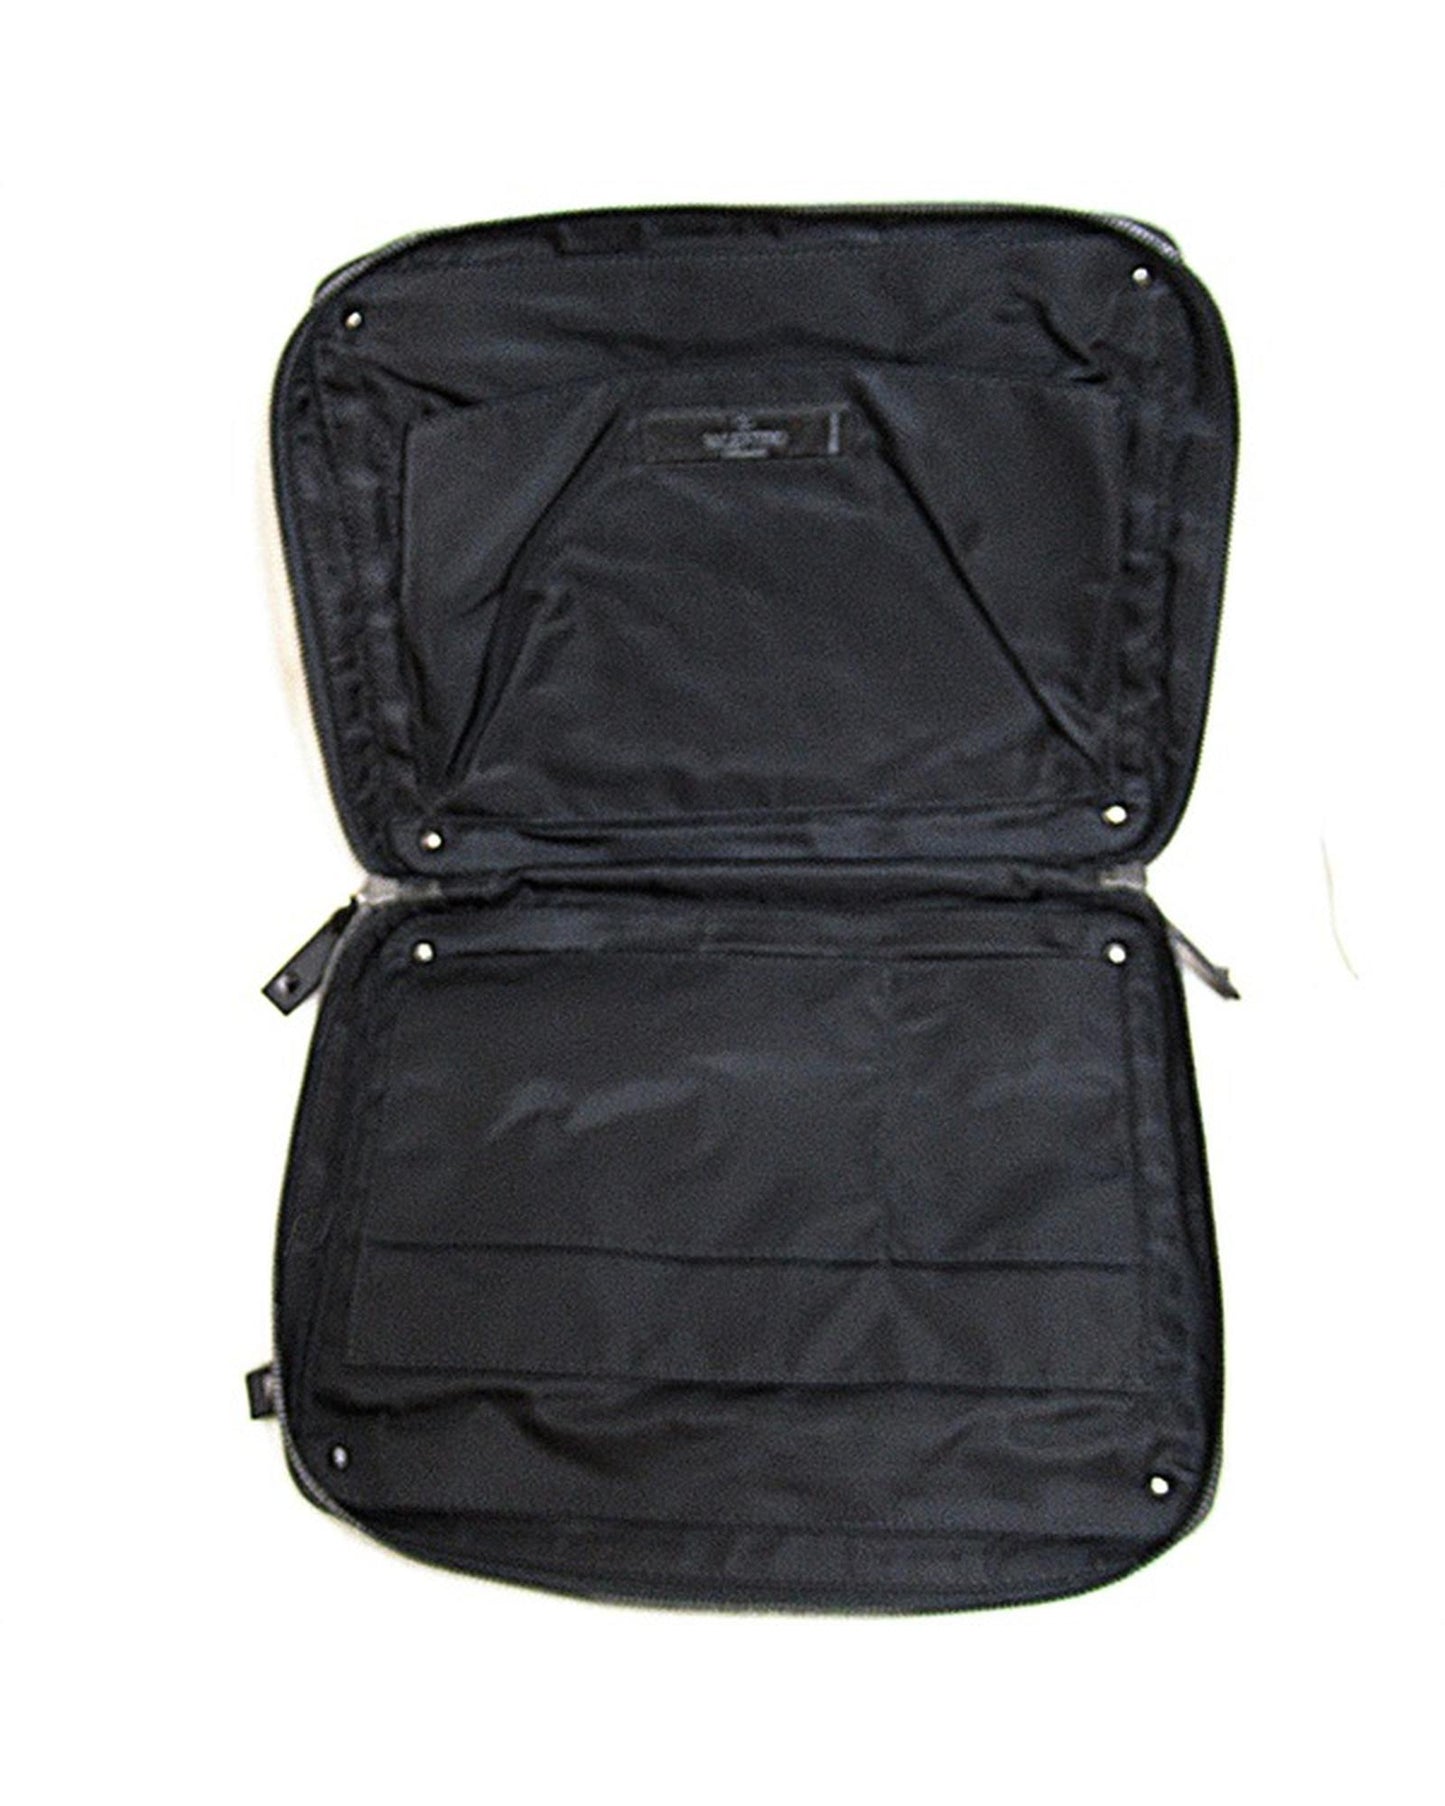 Valentino Men's Valentino Black Nylon Clutch Bag in Black